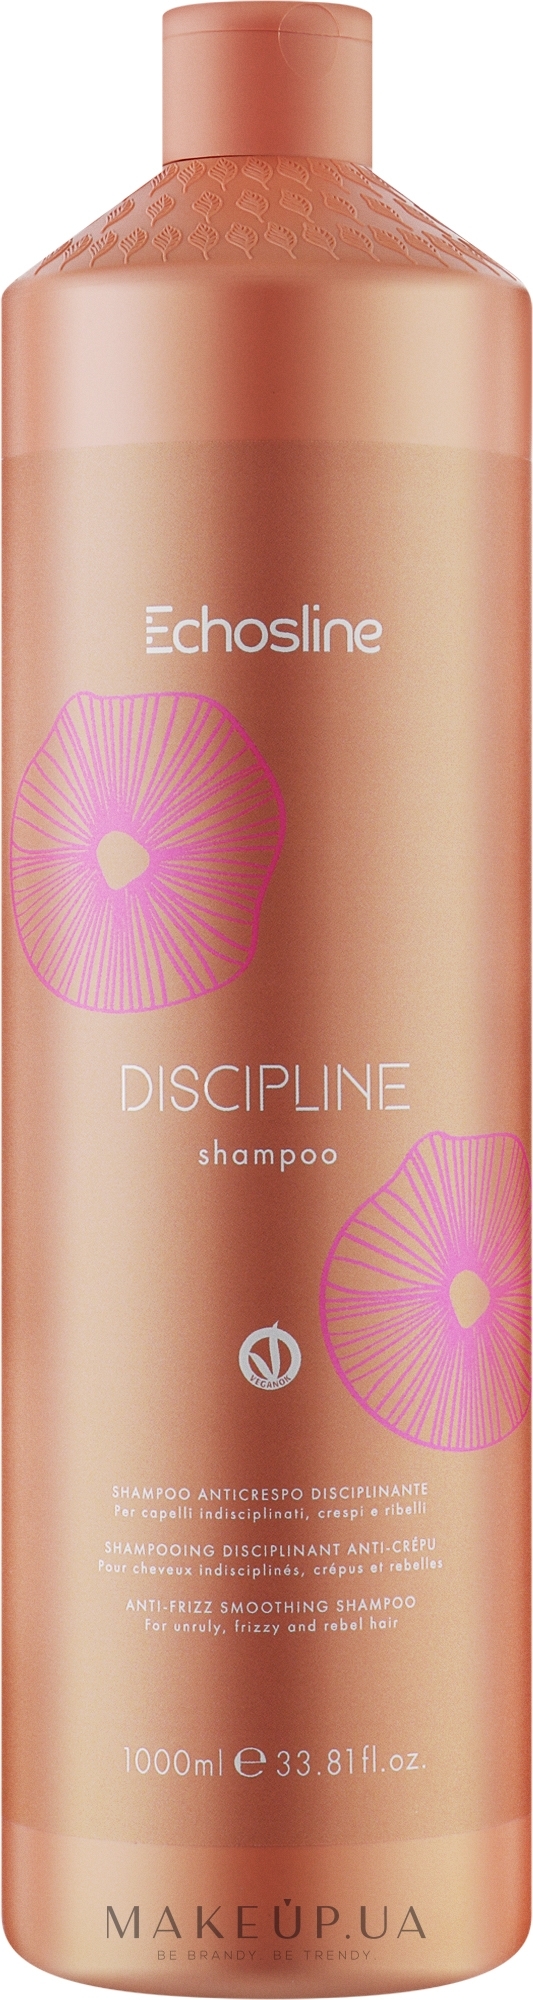 Шампунь для пористых волос - Echosline Discipline Shampoo — фото 1000ml